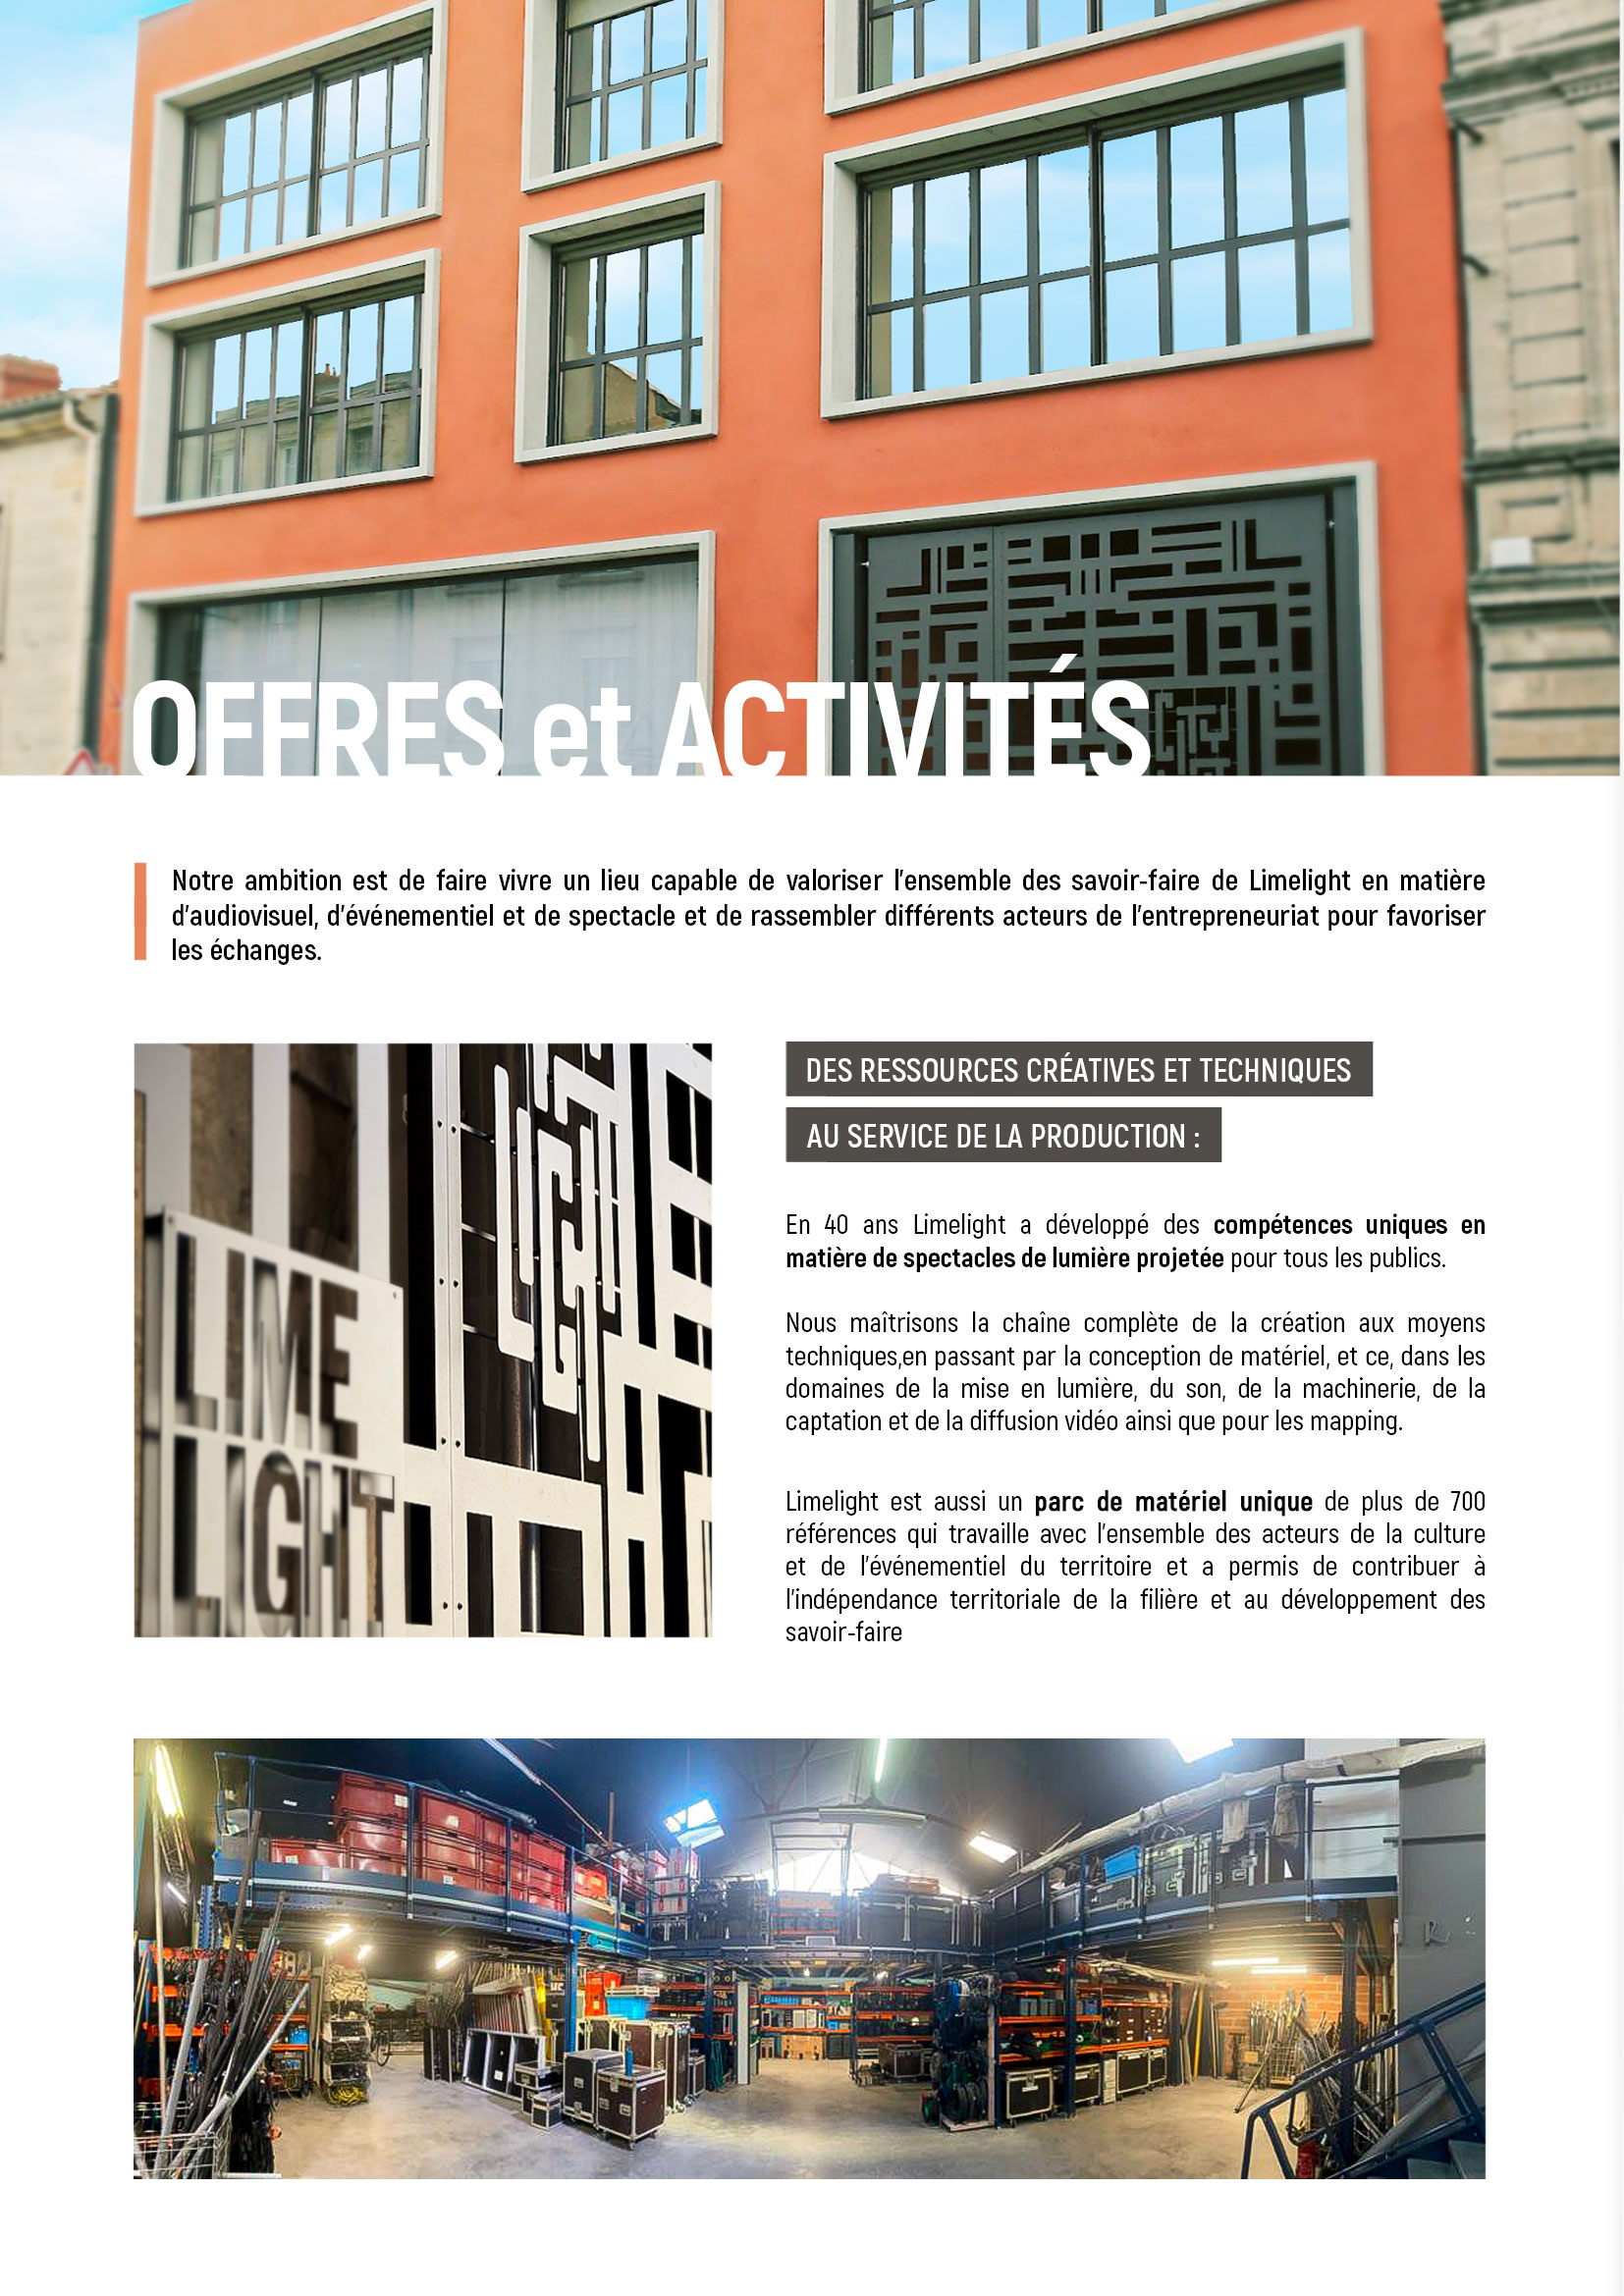 City Light - Galerie Lumière, 200 cours Balguerie Suttenberg 33300 Bordeaux